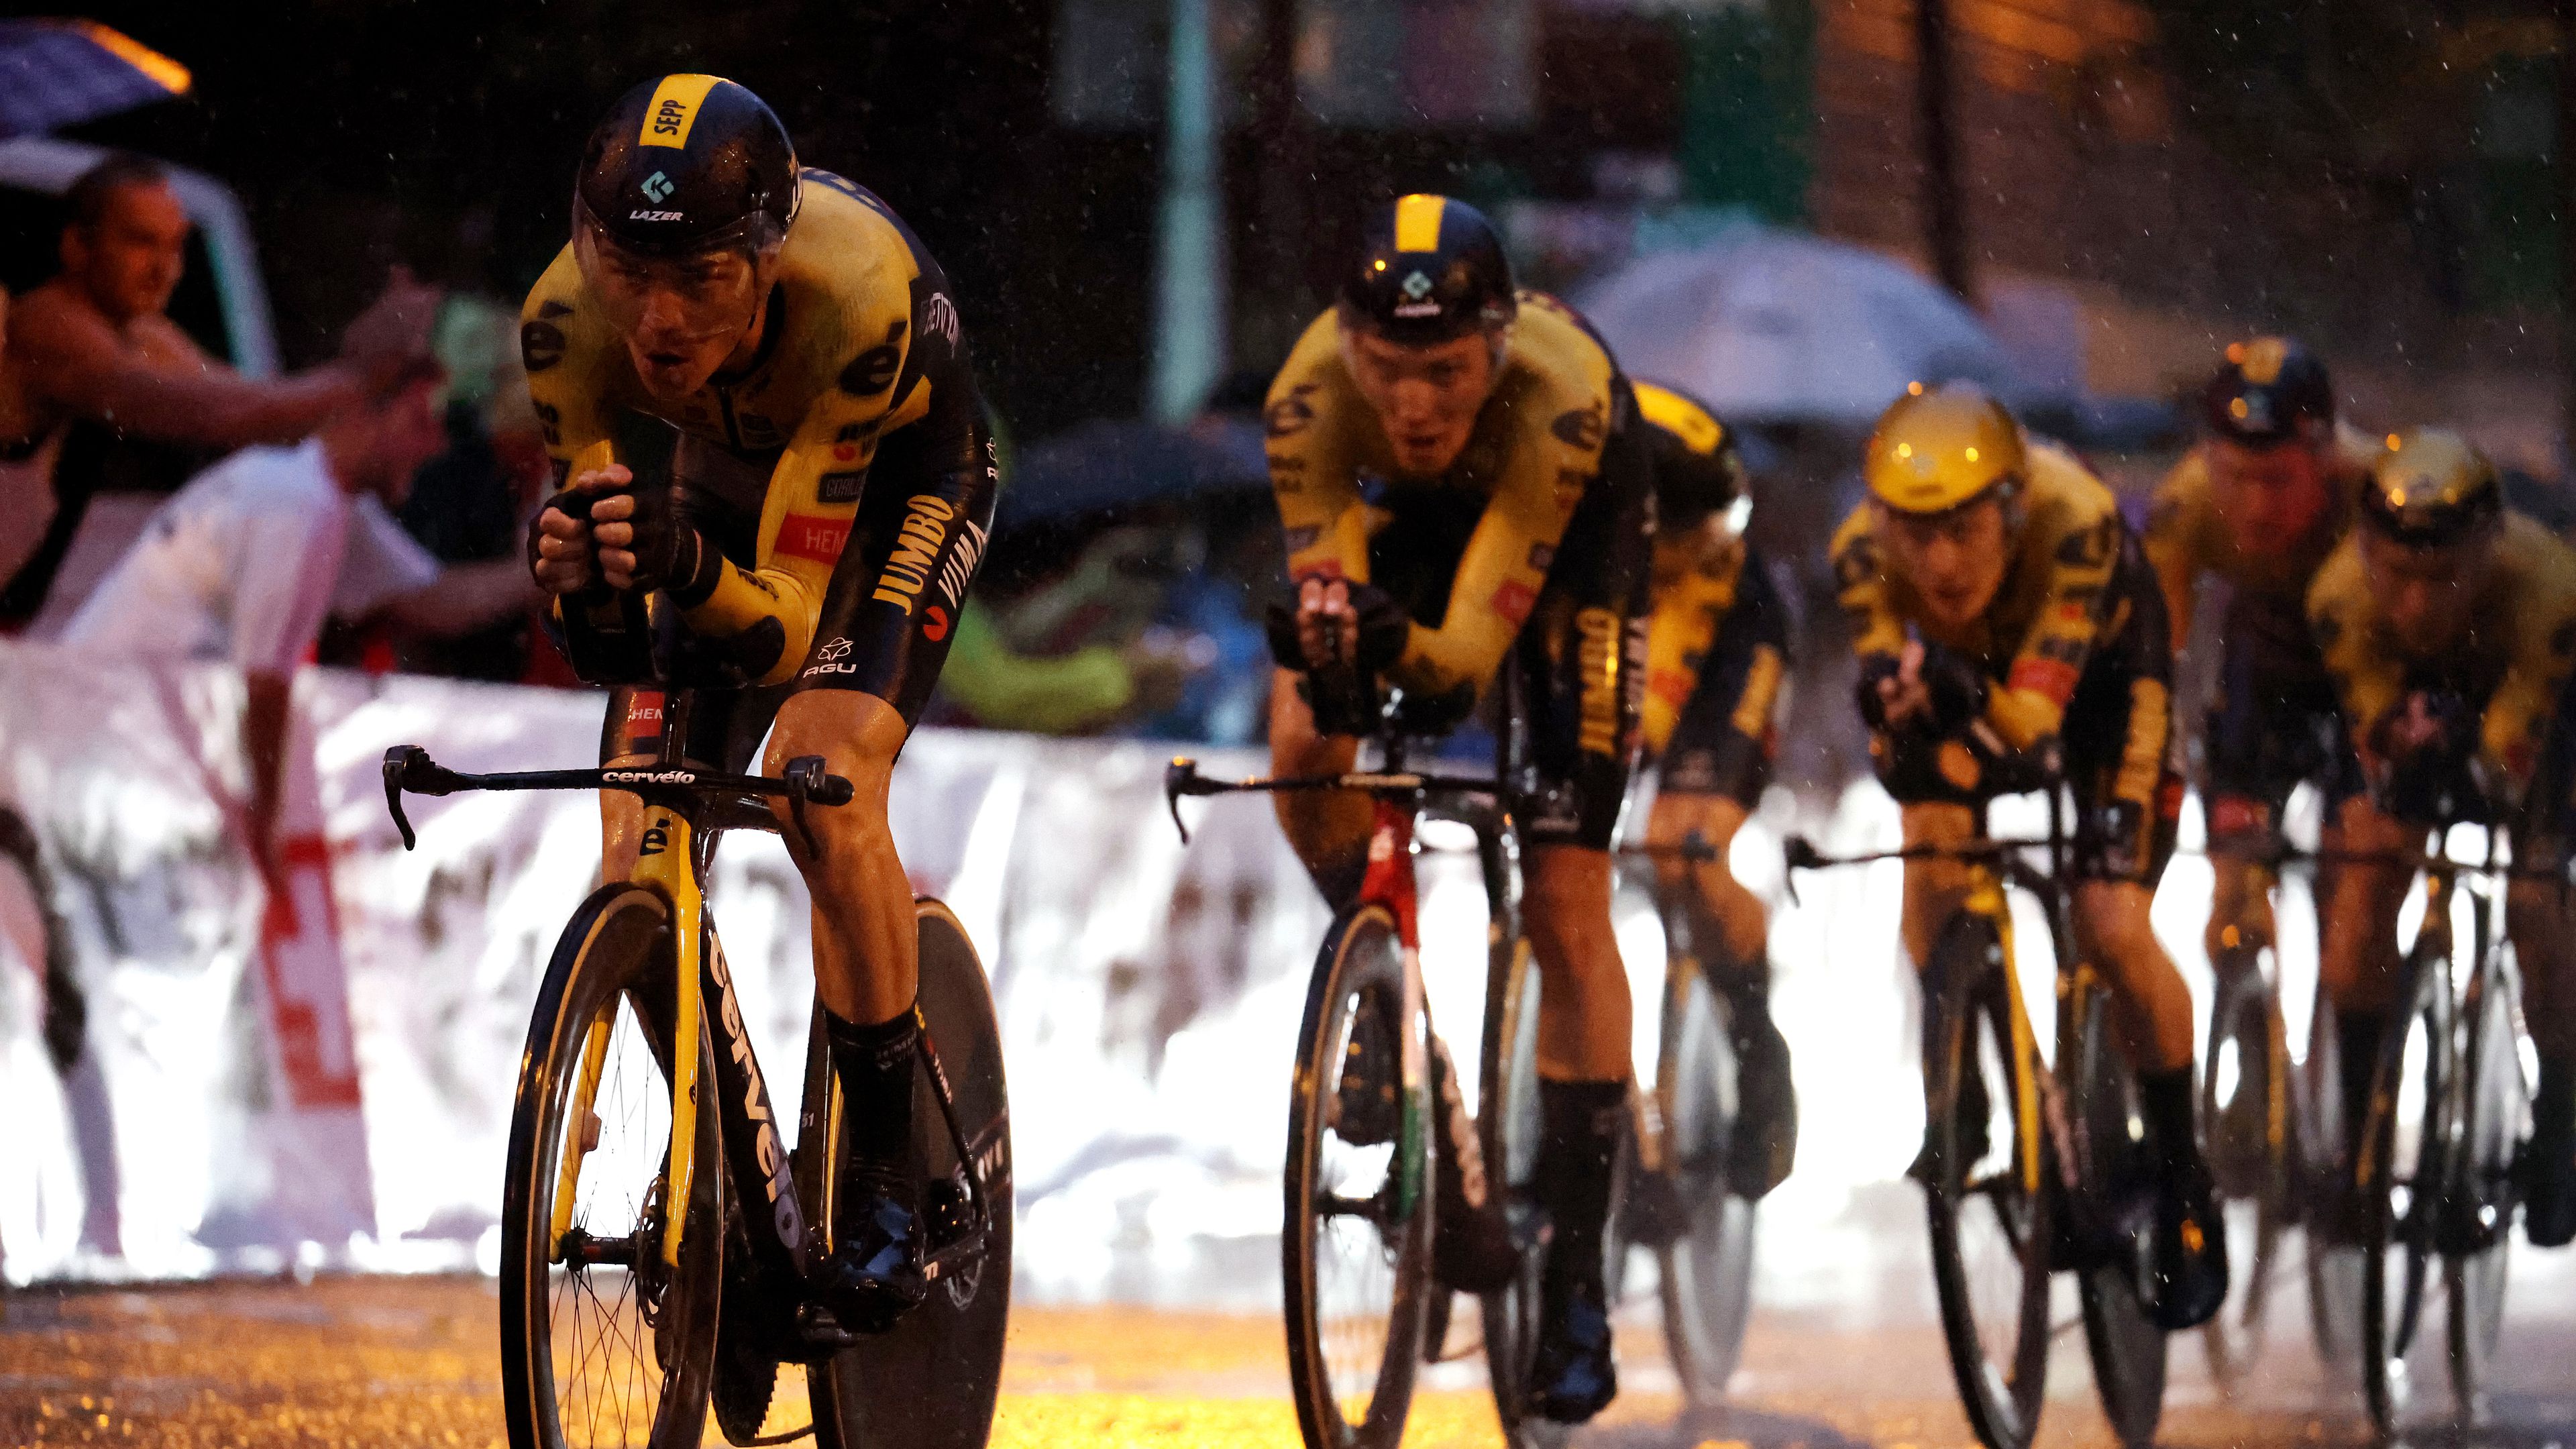 Valterék tizenegyedikek, fél másodperc döntött a Vuelta-nyitányon